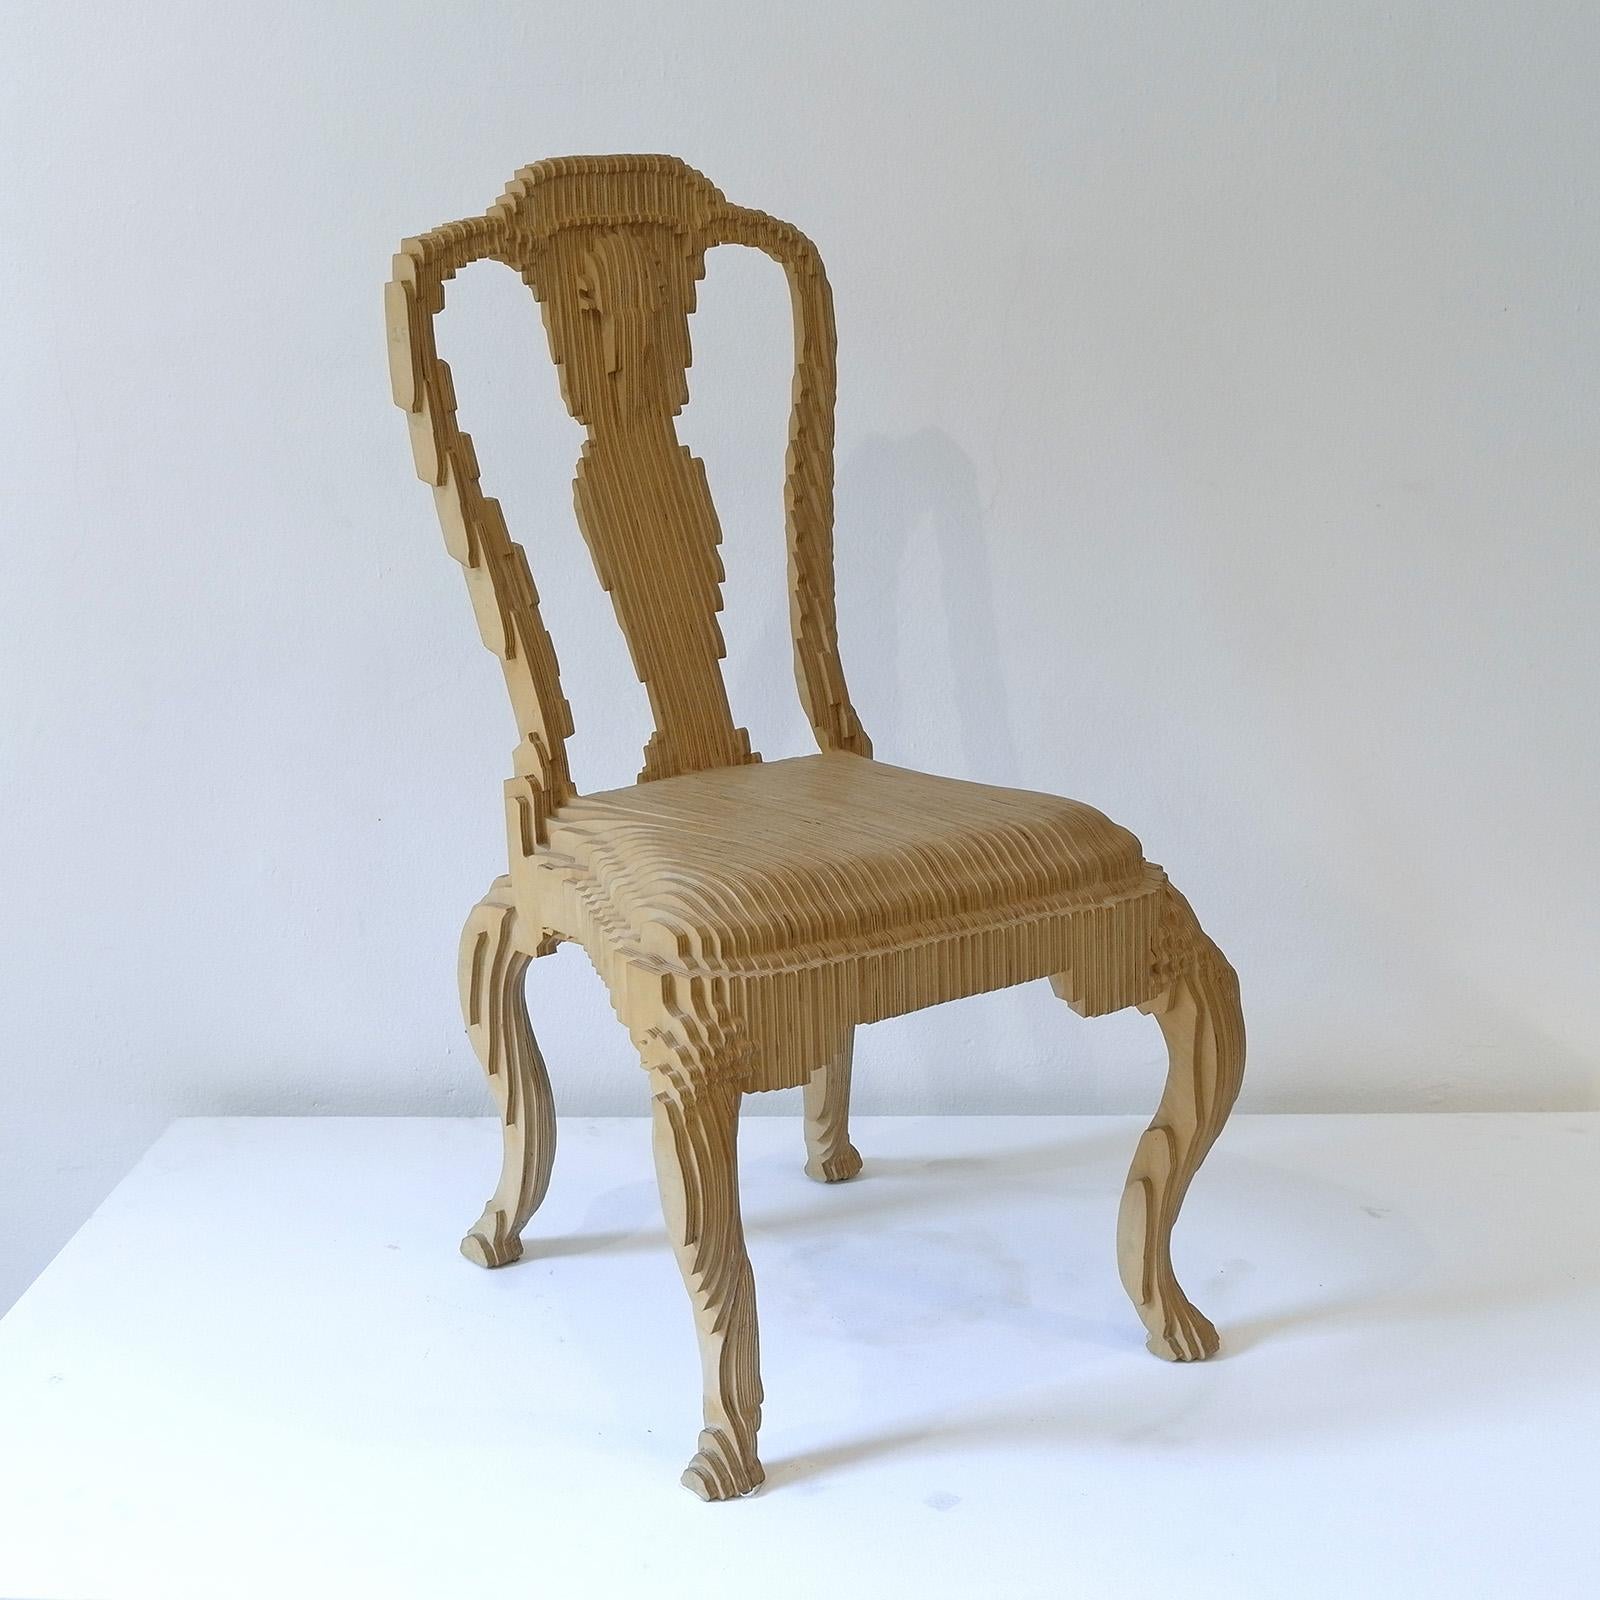 Der Klon-Stuhl basiert auf einem Queen Anne-Stuhl aus der Sammlung des Metropolitan Museums in New York, der gesampelt, digitalisiert und in Sperrholz nachgebaut wurde. Das Stück behält die Form und die Formalität des Originals bei, ist aber in